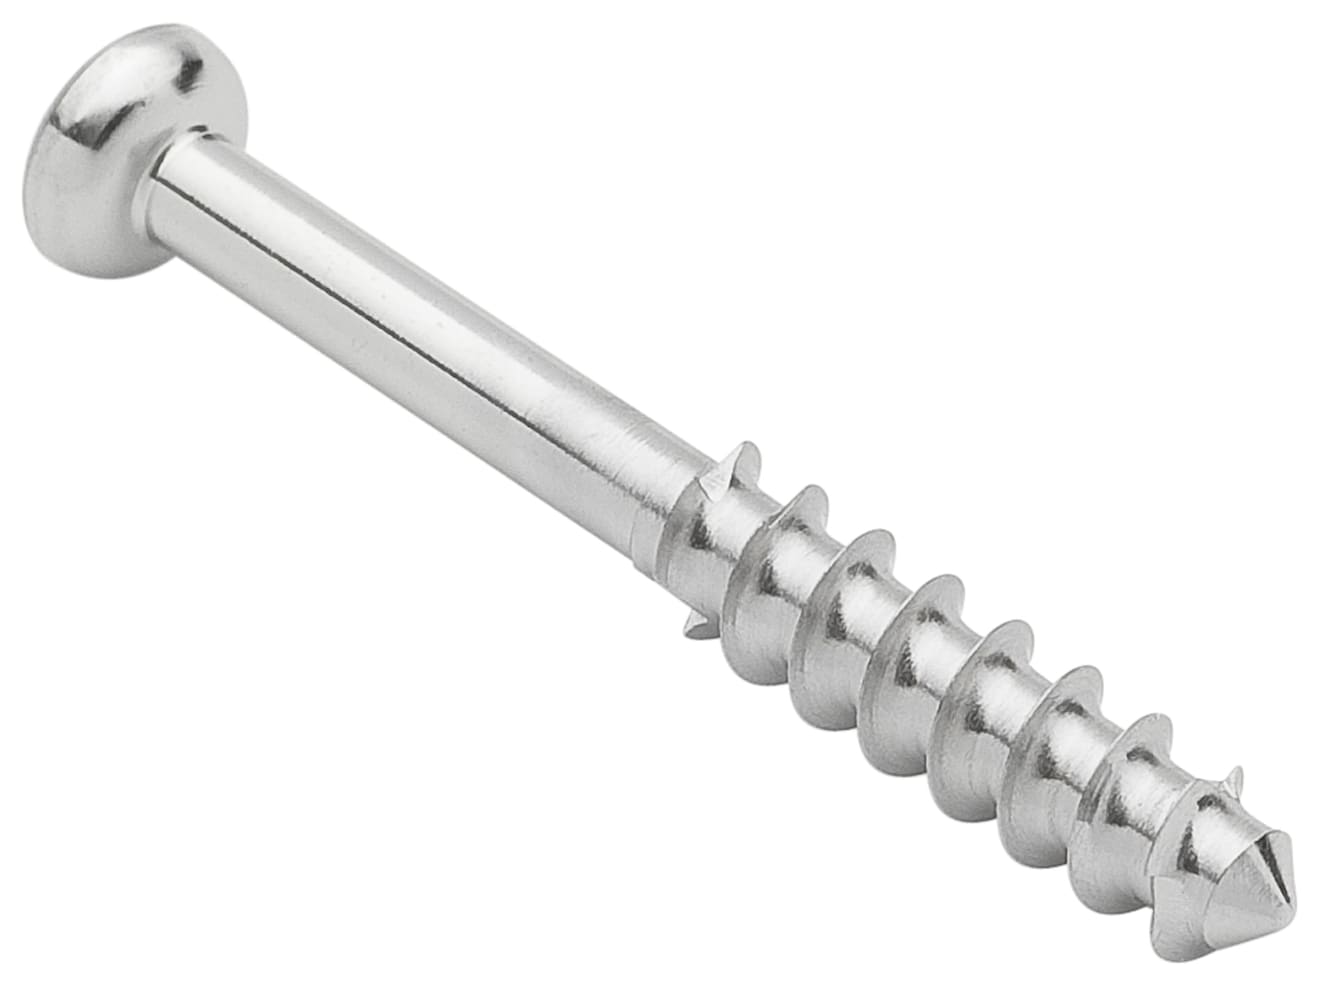 Low Profil Schraube, Stahl, langes Gewinde, 4.0 mm x 32 mm, unsteril, IM